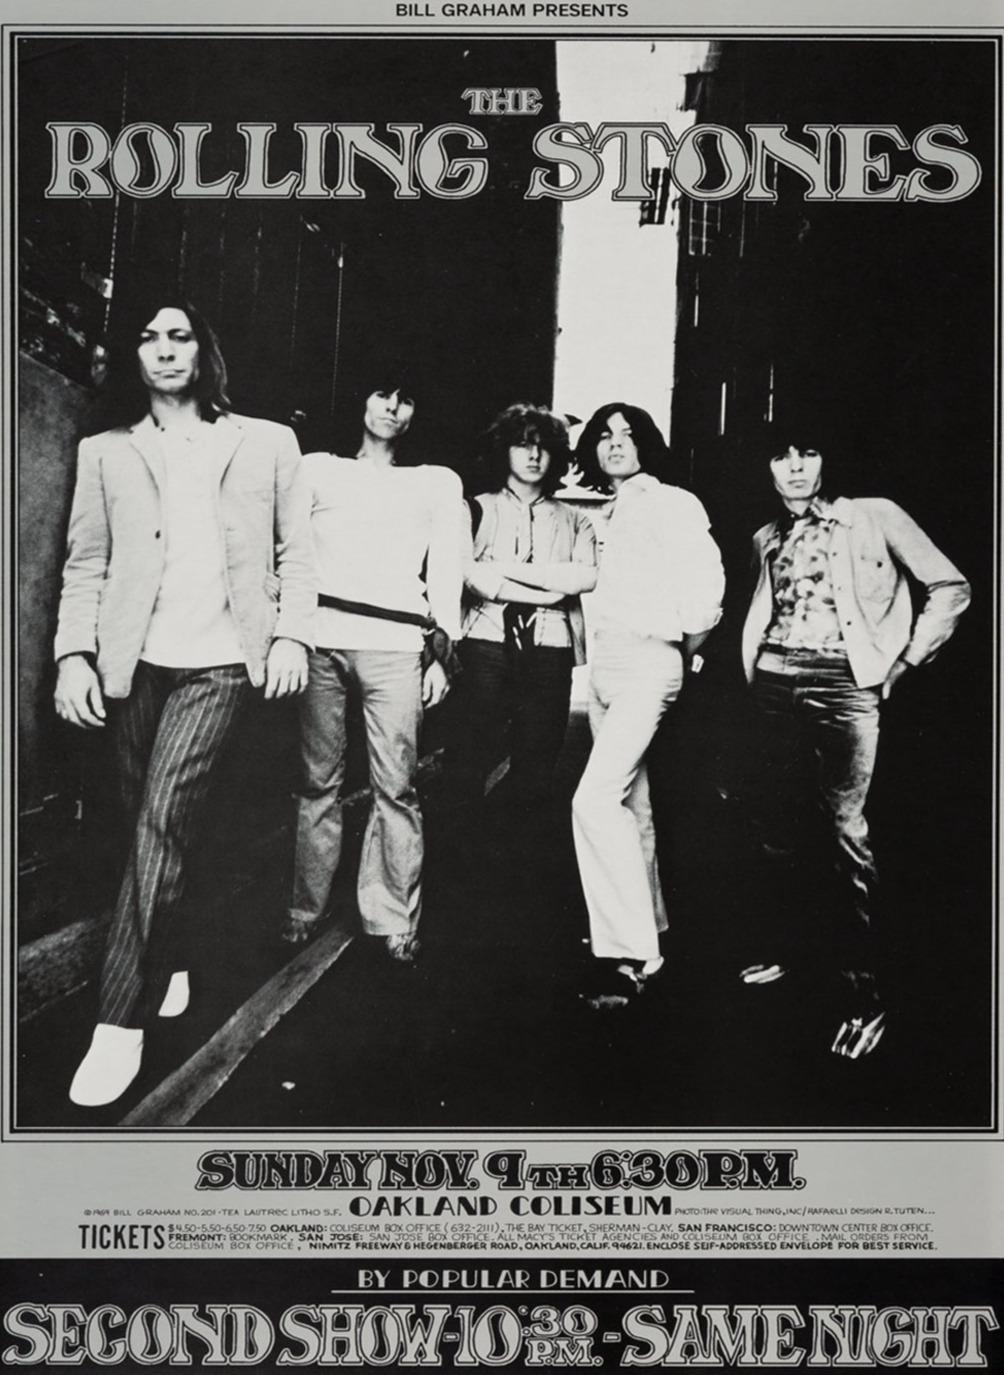 Magnifique affiche des concerts des Rolling Stones au Oakland Coliseum en Californie, USA. Présentés par Bill Graham, les concerts ont tous deux eu lieu le 9 novembre et faisaient partie de l'